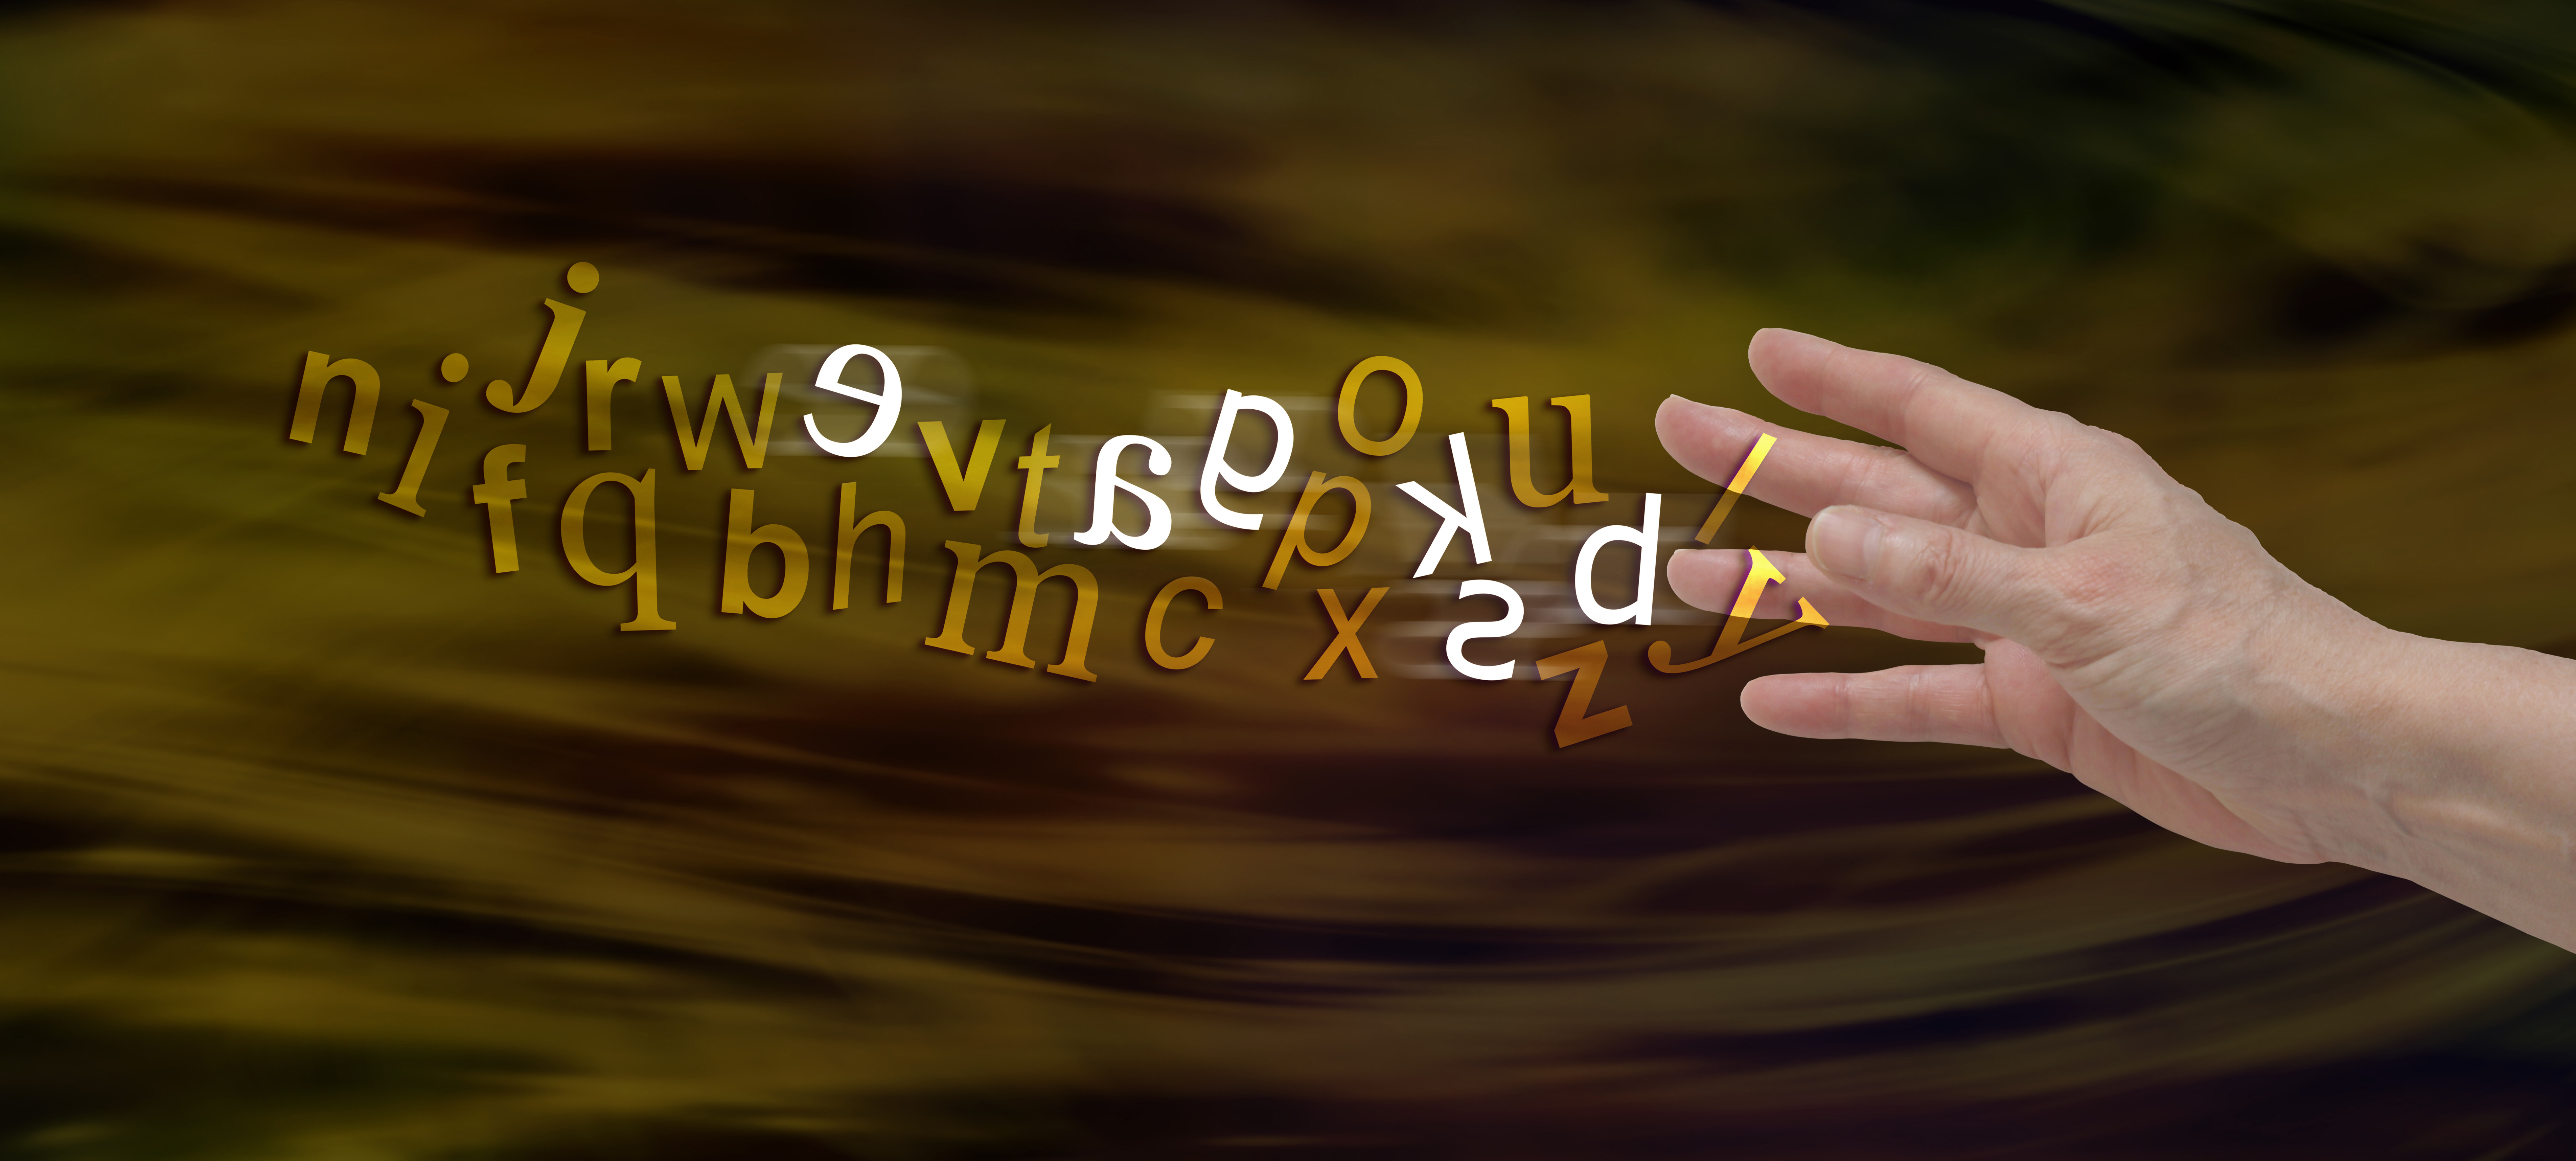 En bild på en hand där bokstäverna rinner ut som guld från fingrarna. Några av bokstäverna är vita för att visa att vissa är svåra att se eller läsa, så som det kan vara för personer med dyslexi.